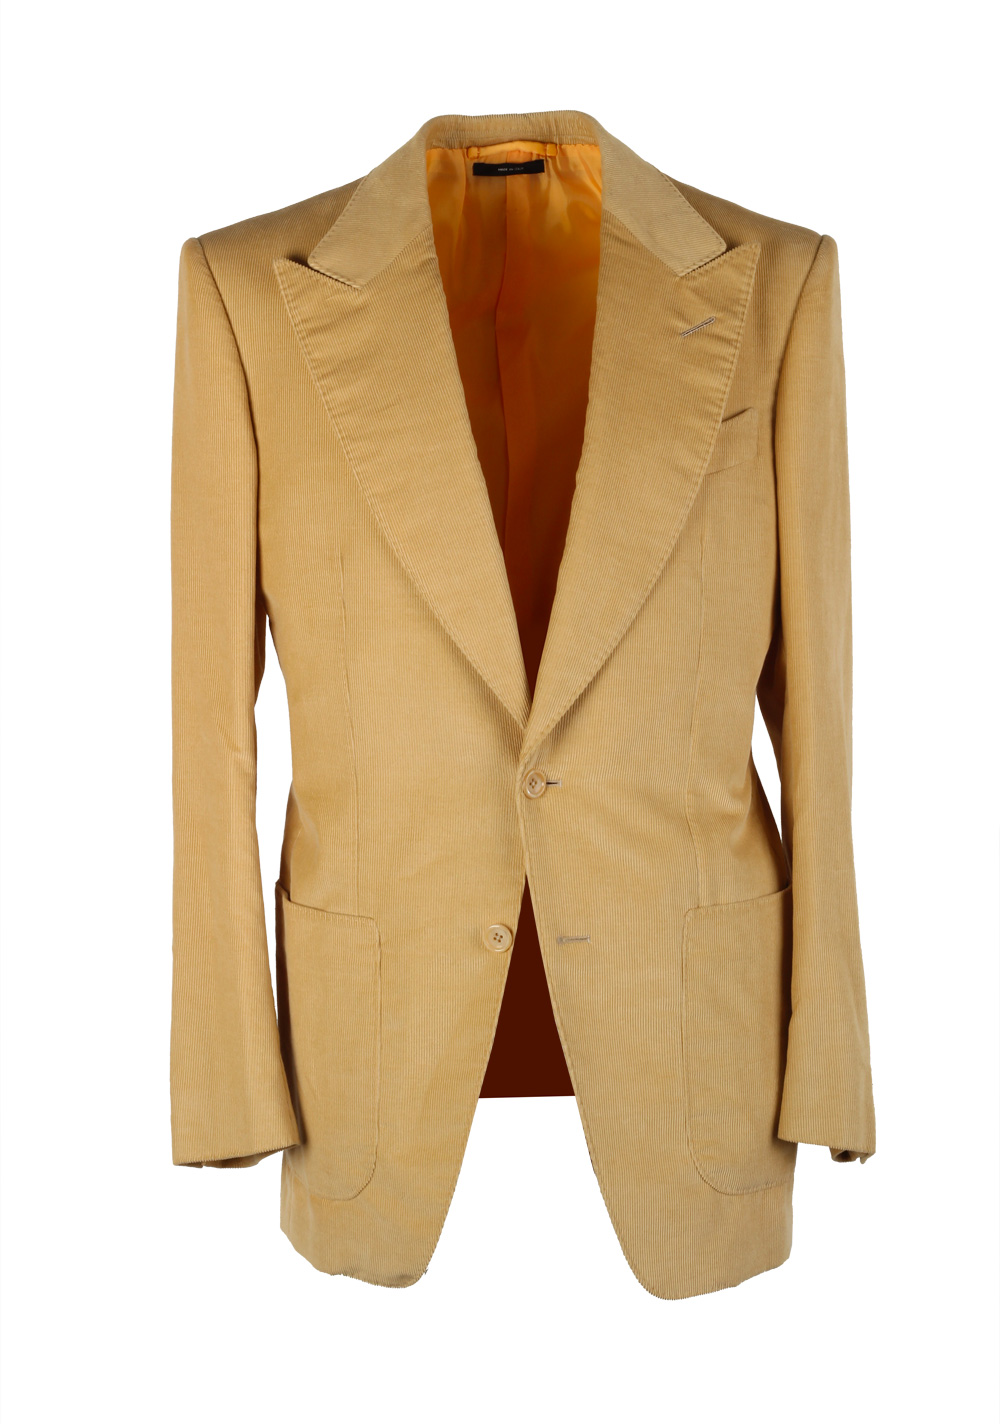 TOM FORD Atticus Sand Corduroy Suit Size 46 / 36R U.S. In Cotton Linen | Costume Limité